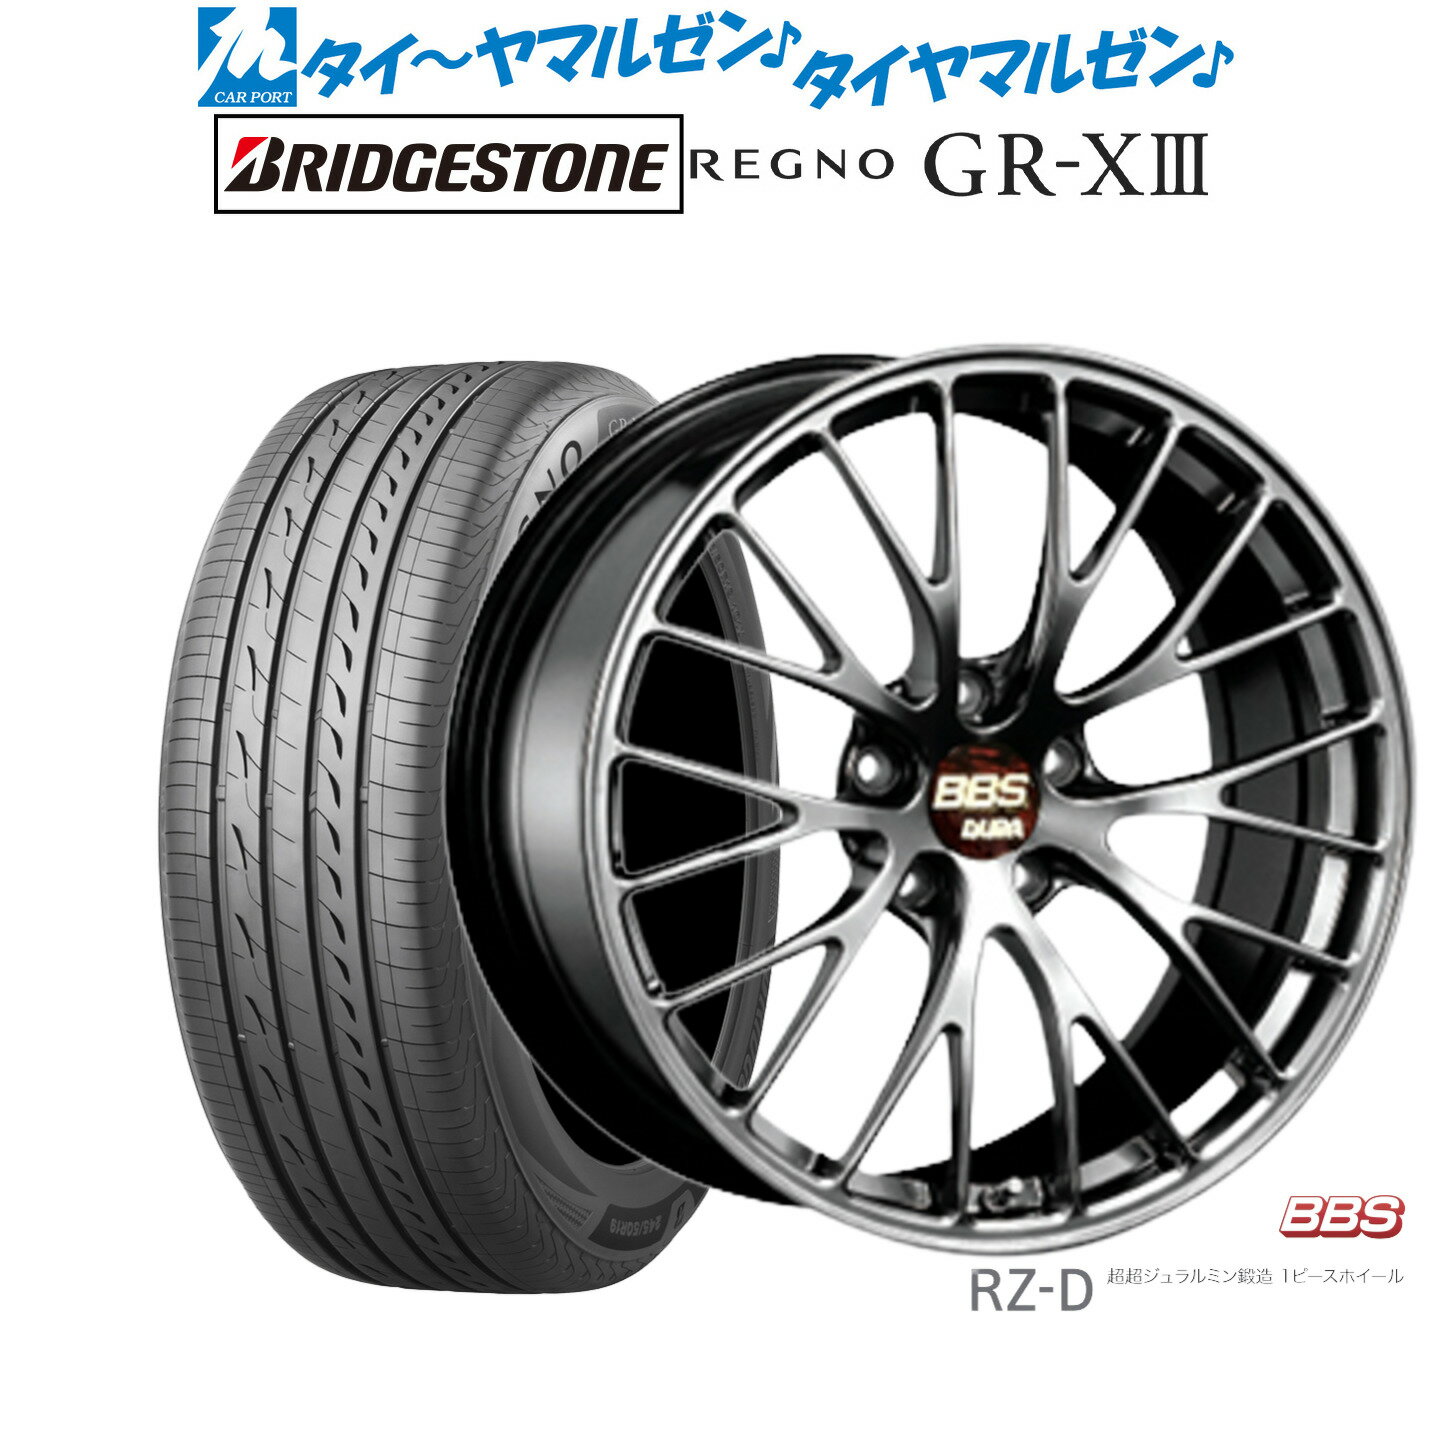 [5/9～15]割引クーポン配布新品 サマータイヤ ホイール4本セットBBS JAPAN RZ-D20インチ 8.5Jブリヂストン REGNO レグノ GR-XIII(GR-X3)245/35R20